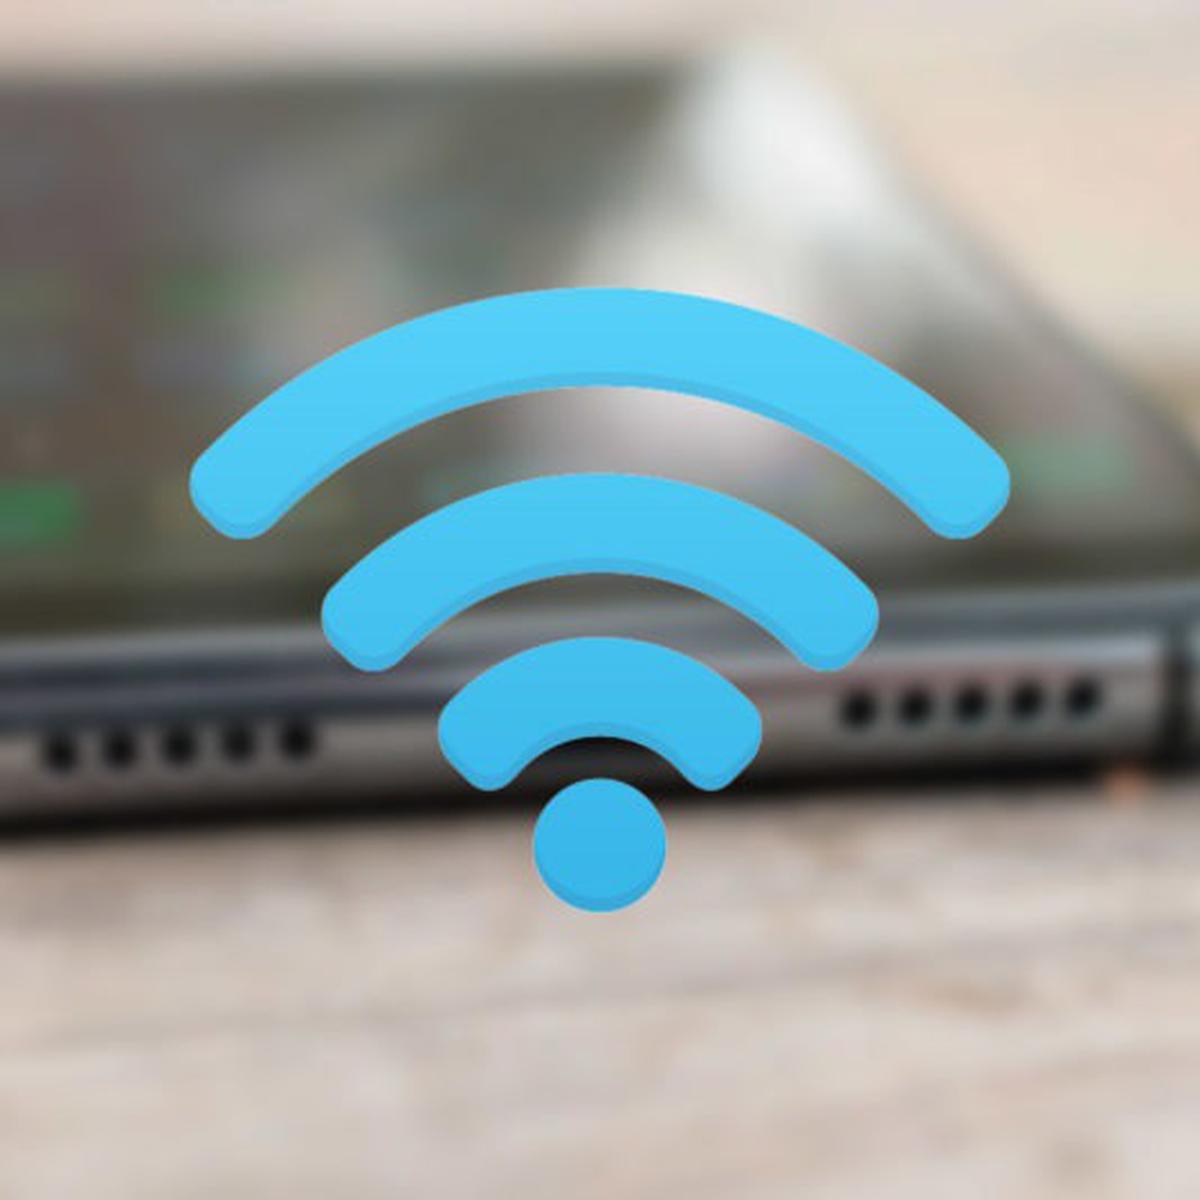 Así puedes mejorar la señal WiFi y aumentar la cobertura en tu casa